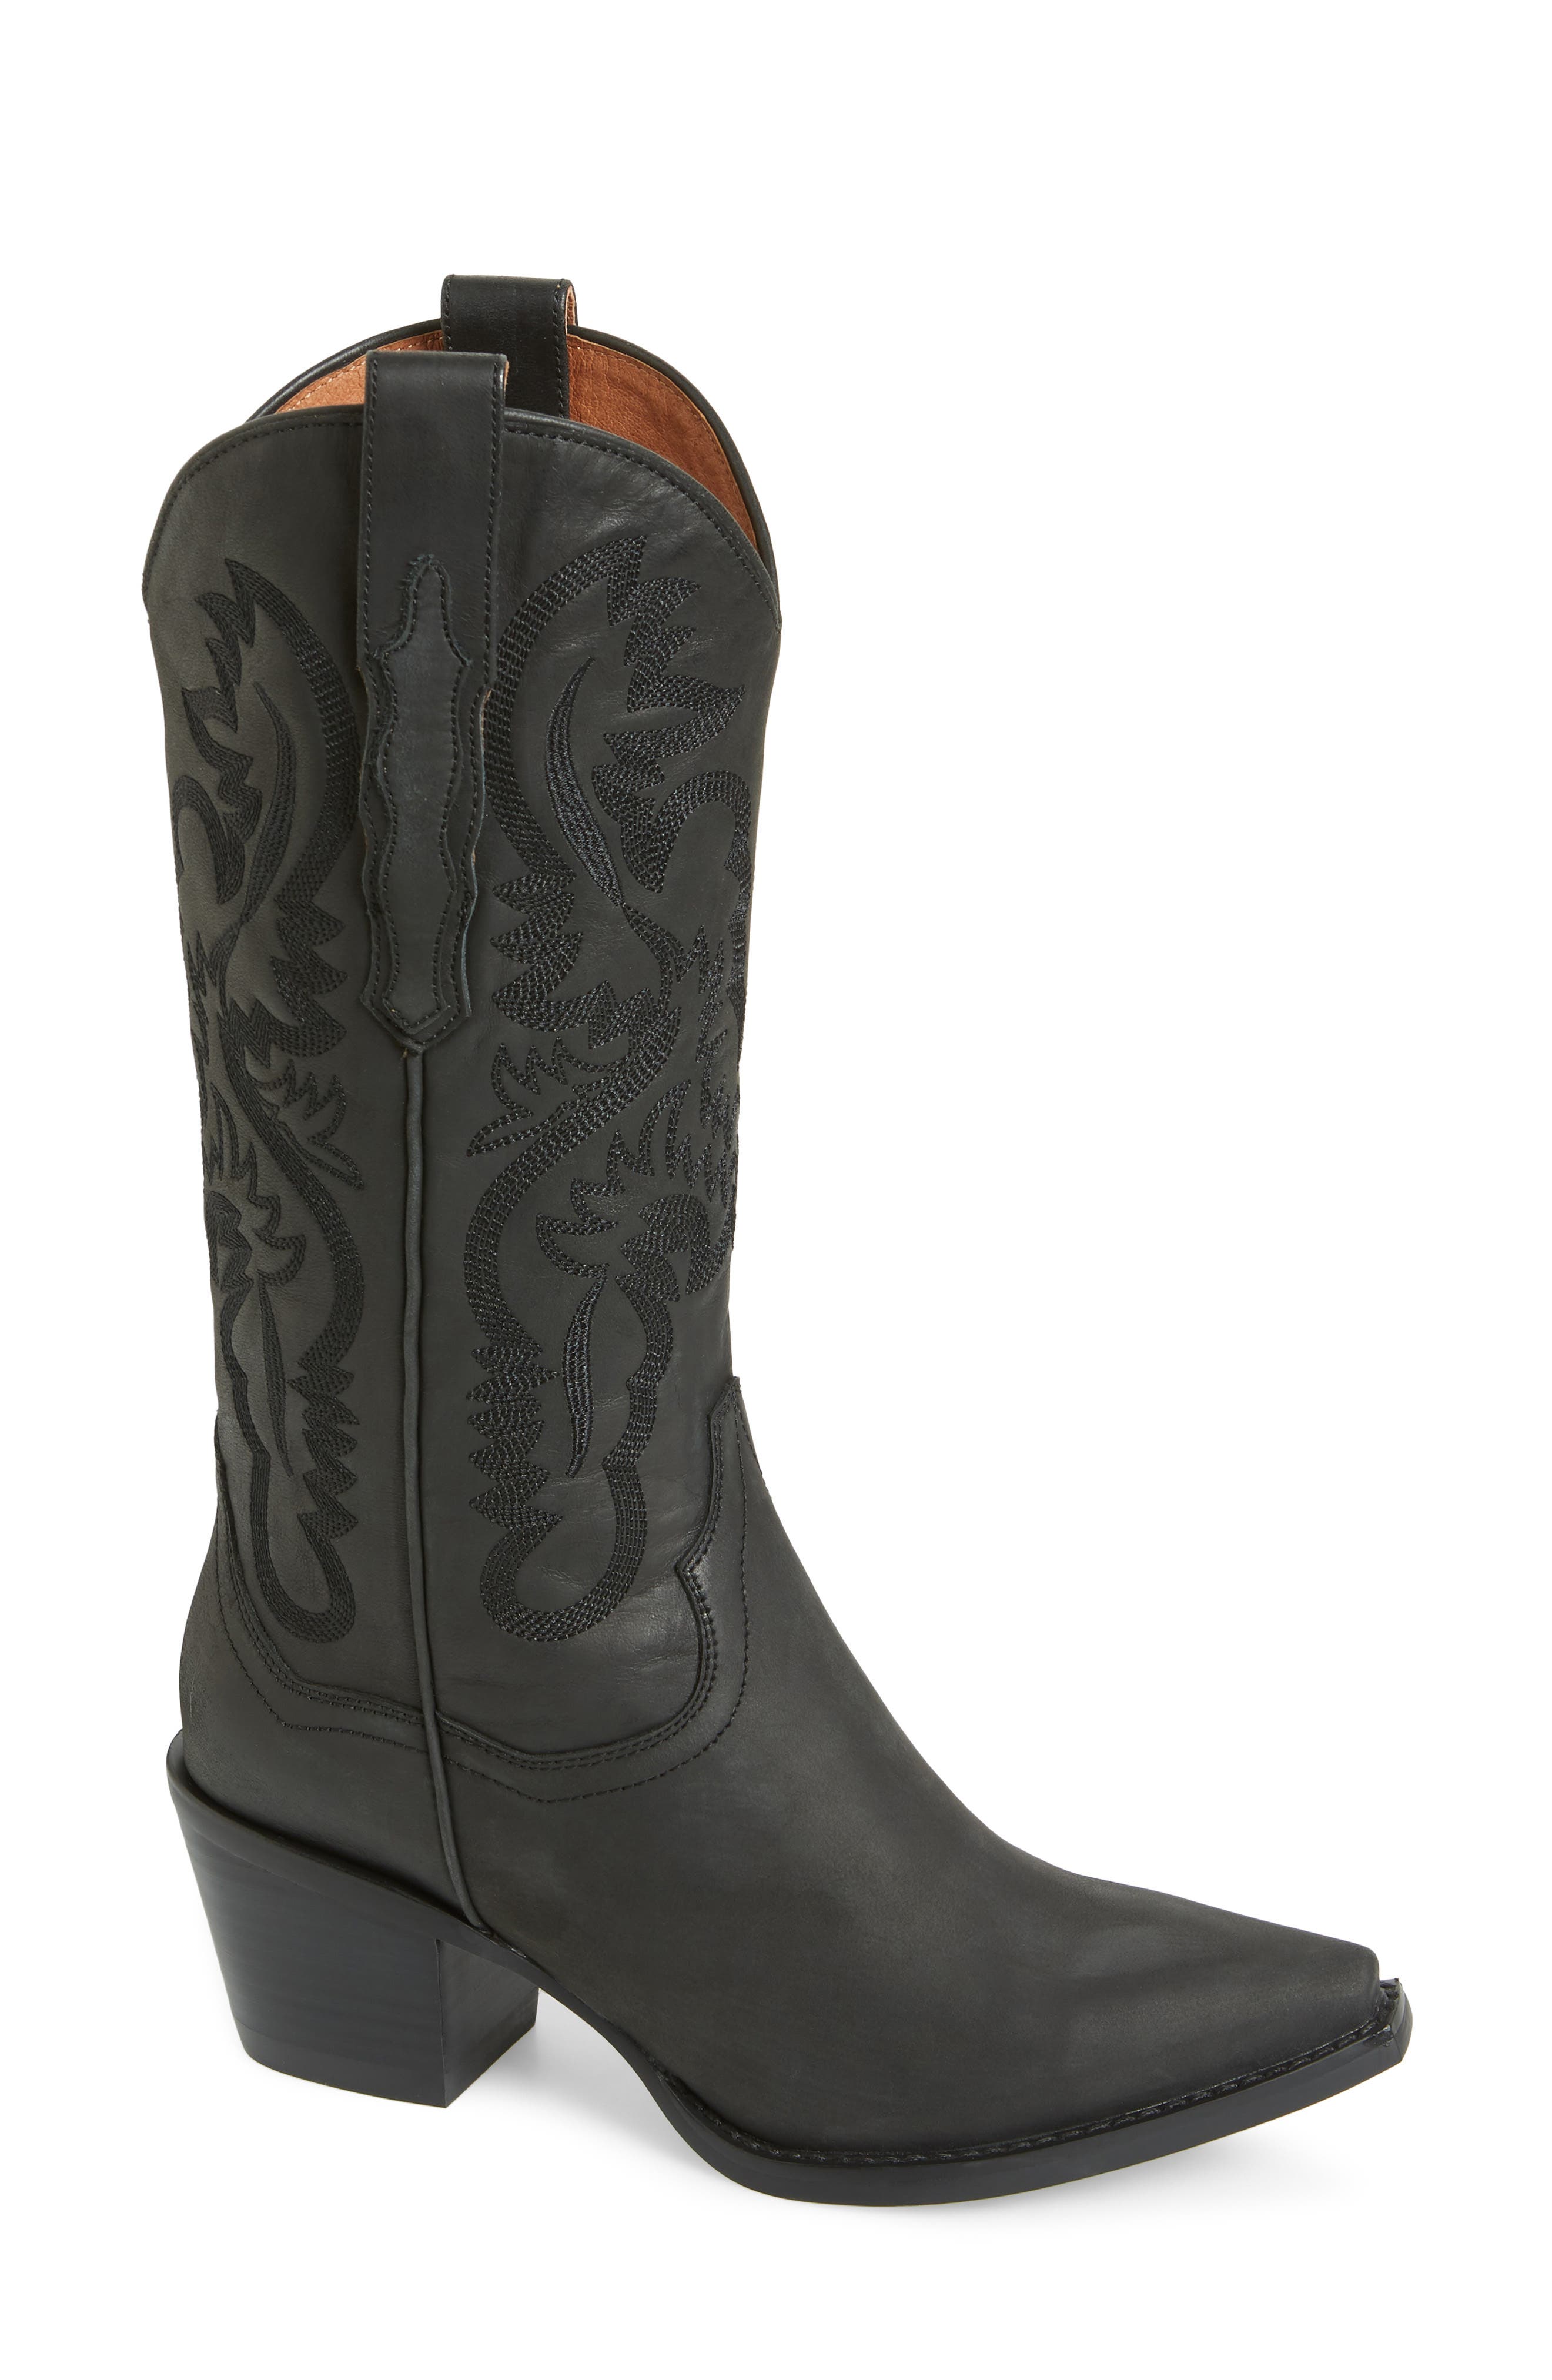 women's cowboy boots cheap